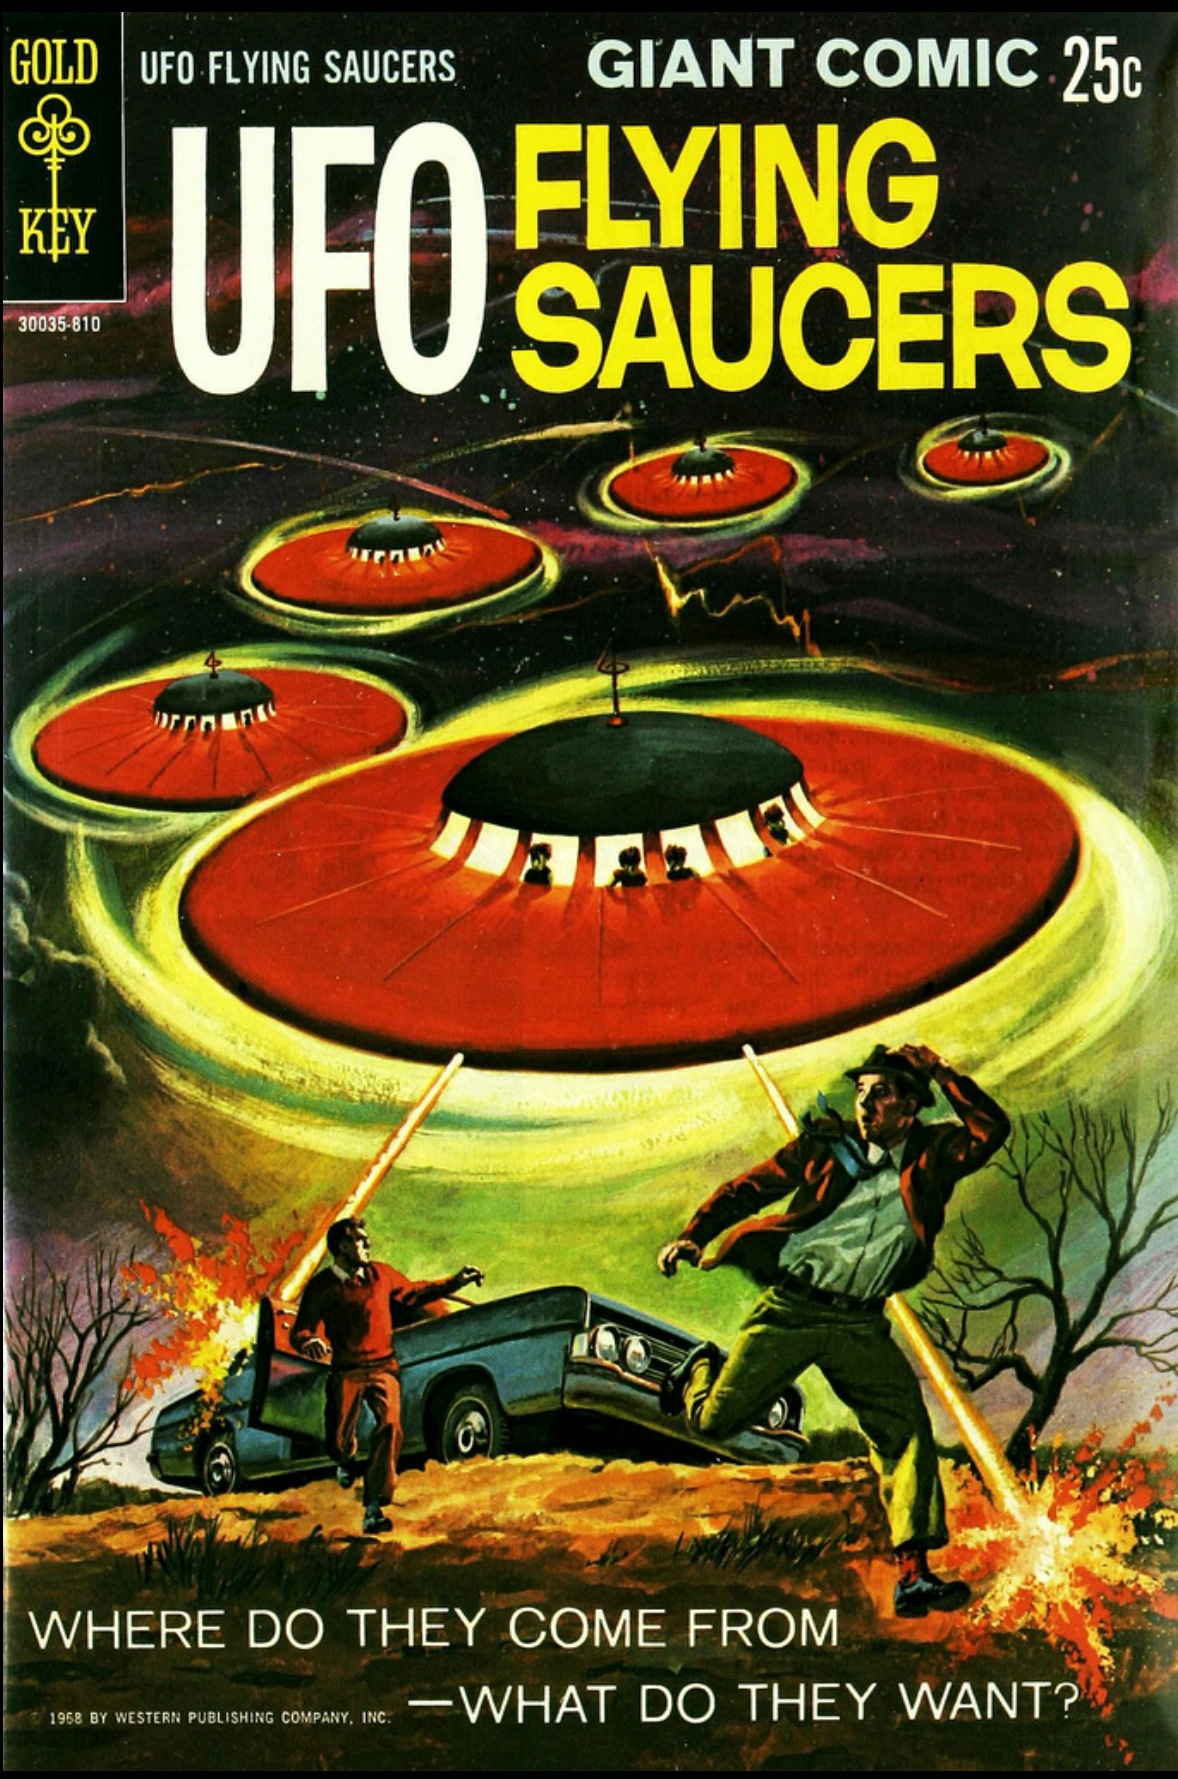 Couverture pour le comic UFO flying saucers (Gold Key, 1968)